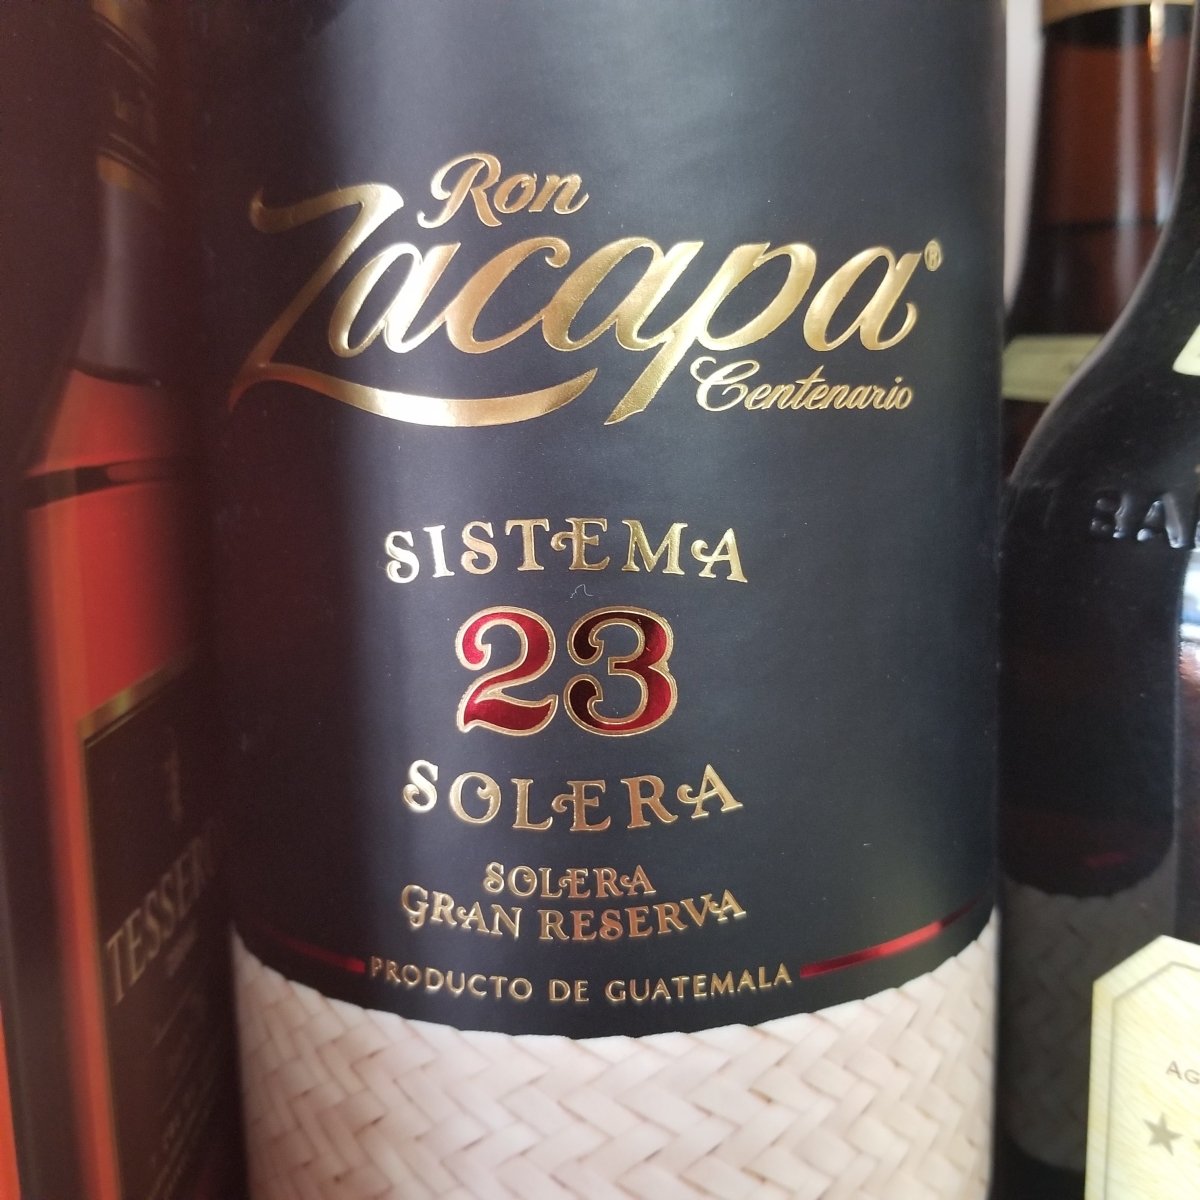 Ron Zacapa Centenario Sistema 23 Solera 750 ml